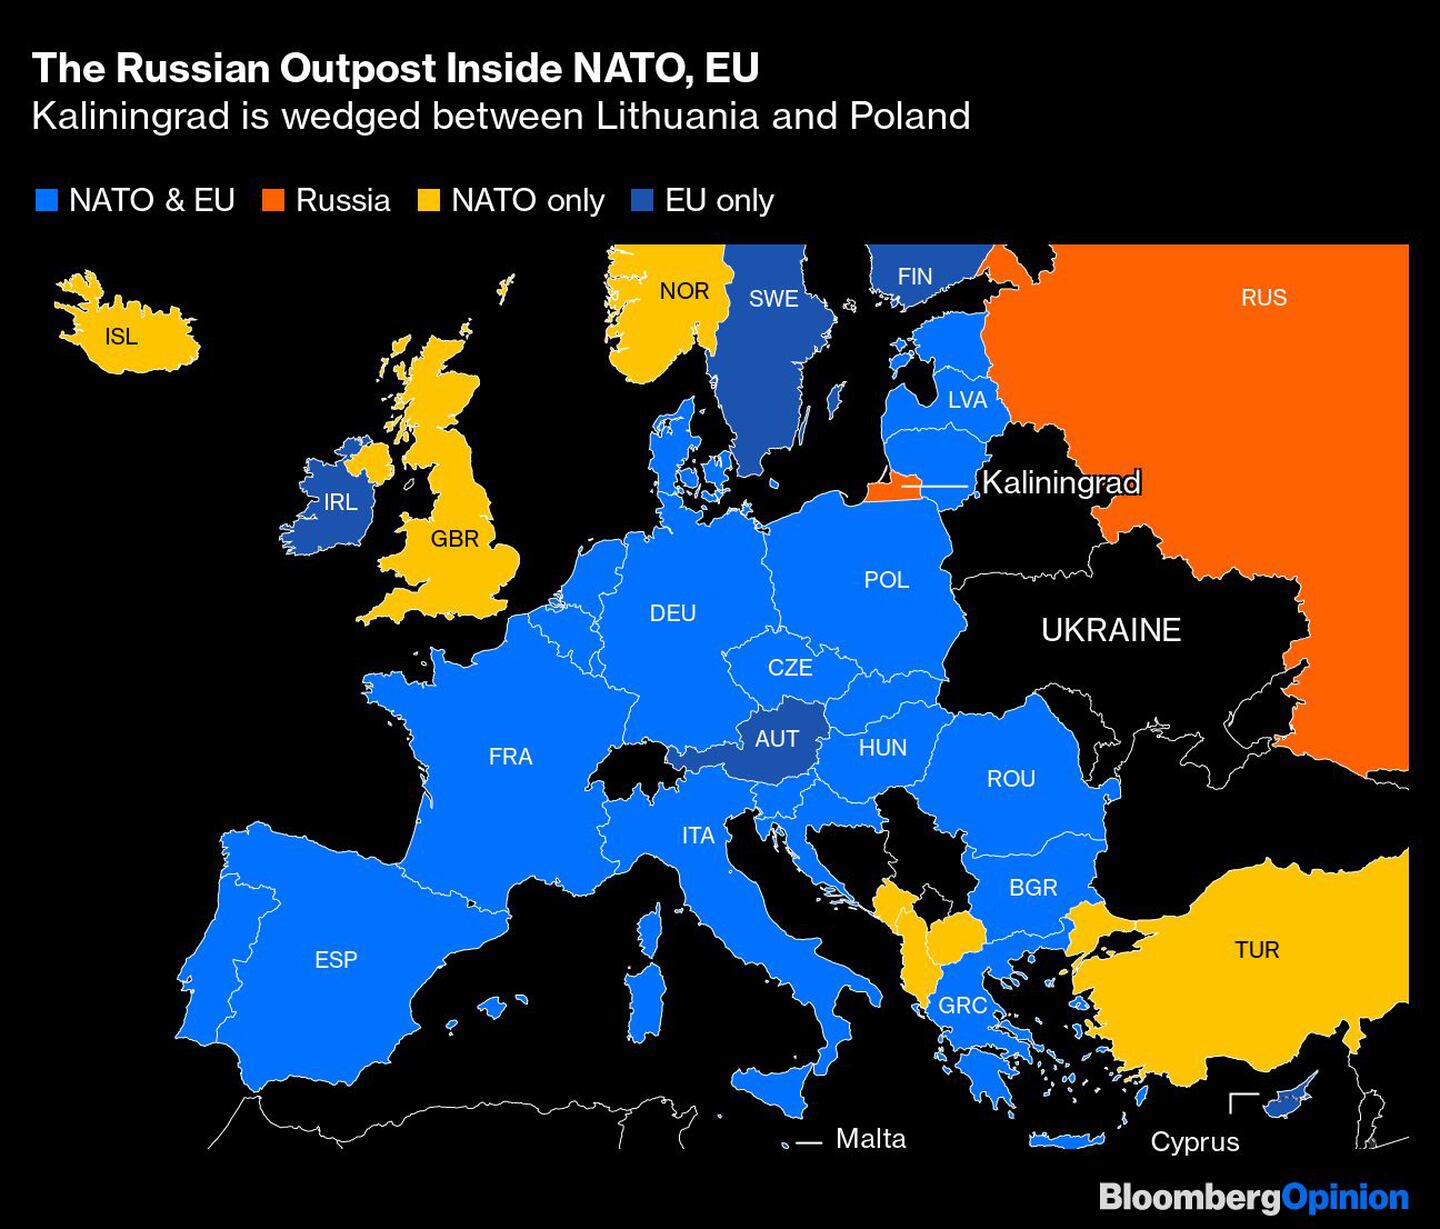 El puesto de avanzada ruso dentro de la OTAN, la UE
Kaliningrado está encajado entre Lituania y Polonia
Azul: OTAN y UE, Naranja: Rusia, Amarillo: Sólo OTAN, Azul oscuro: Sólo UEdfd